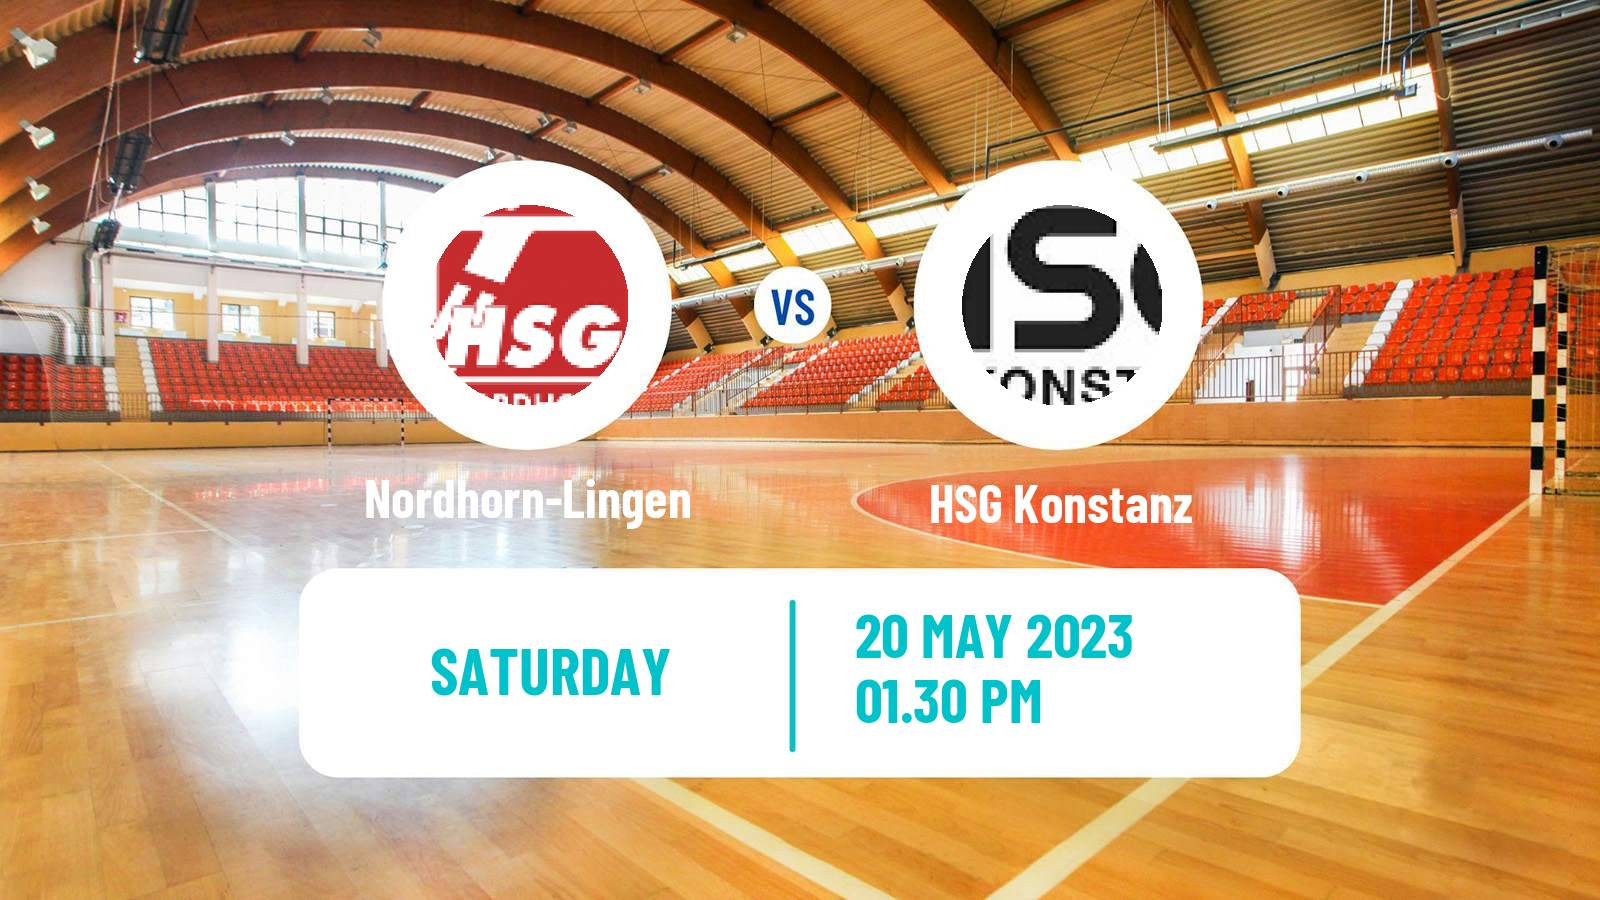 Handball German 2 Bundesliga Handball Nordhorn-Lingen - Konstanz